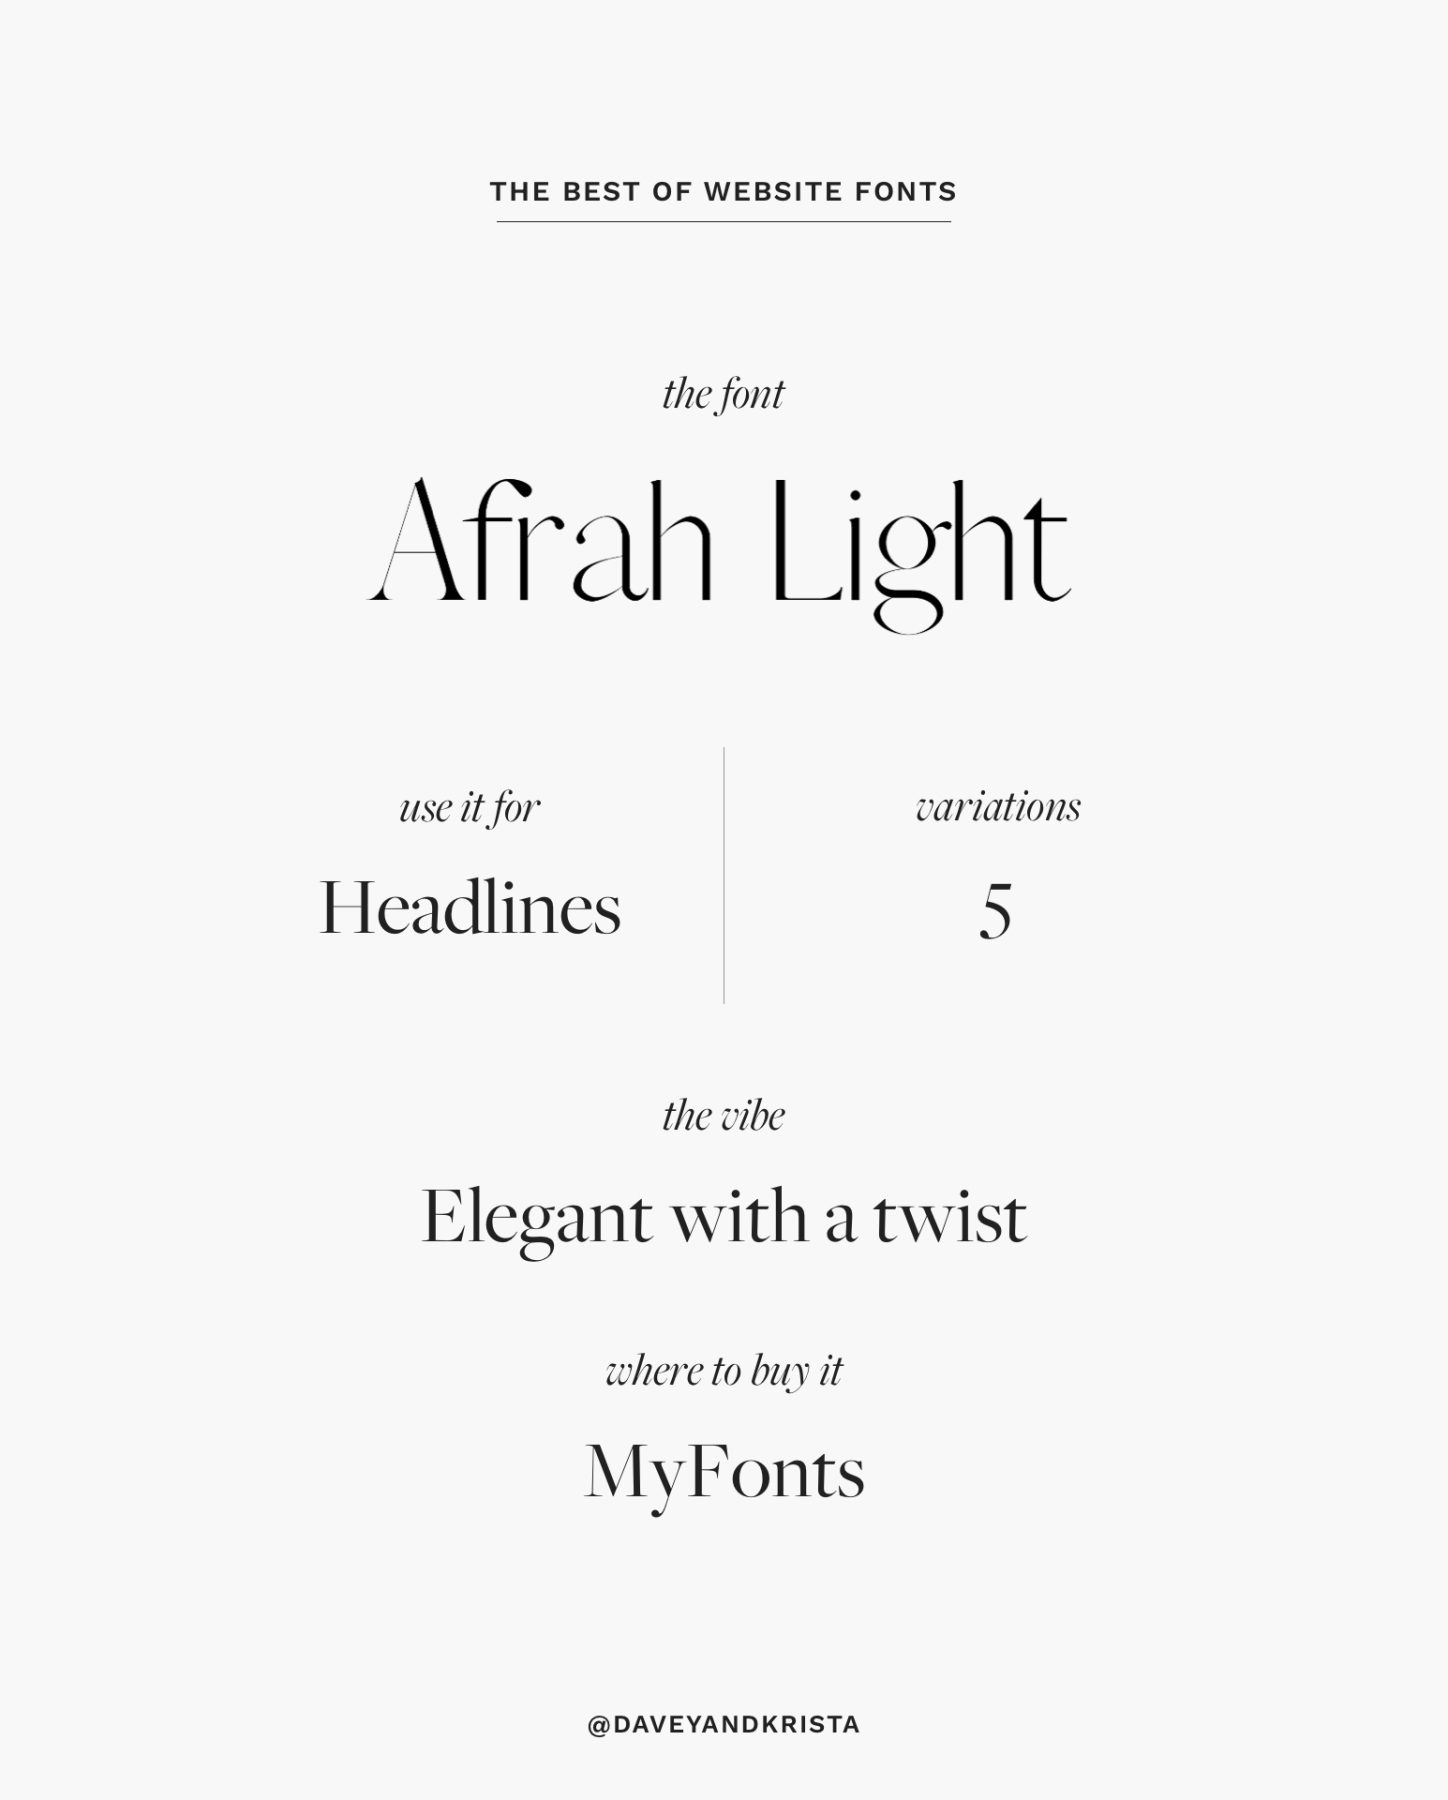 An elegant website font for headlines - Afrah | The Best Fonts for Websites
